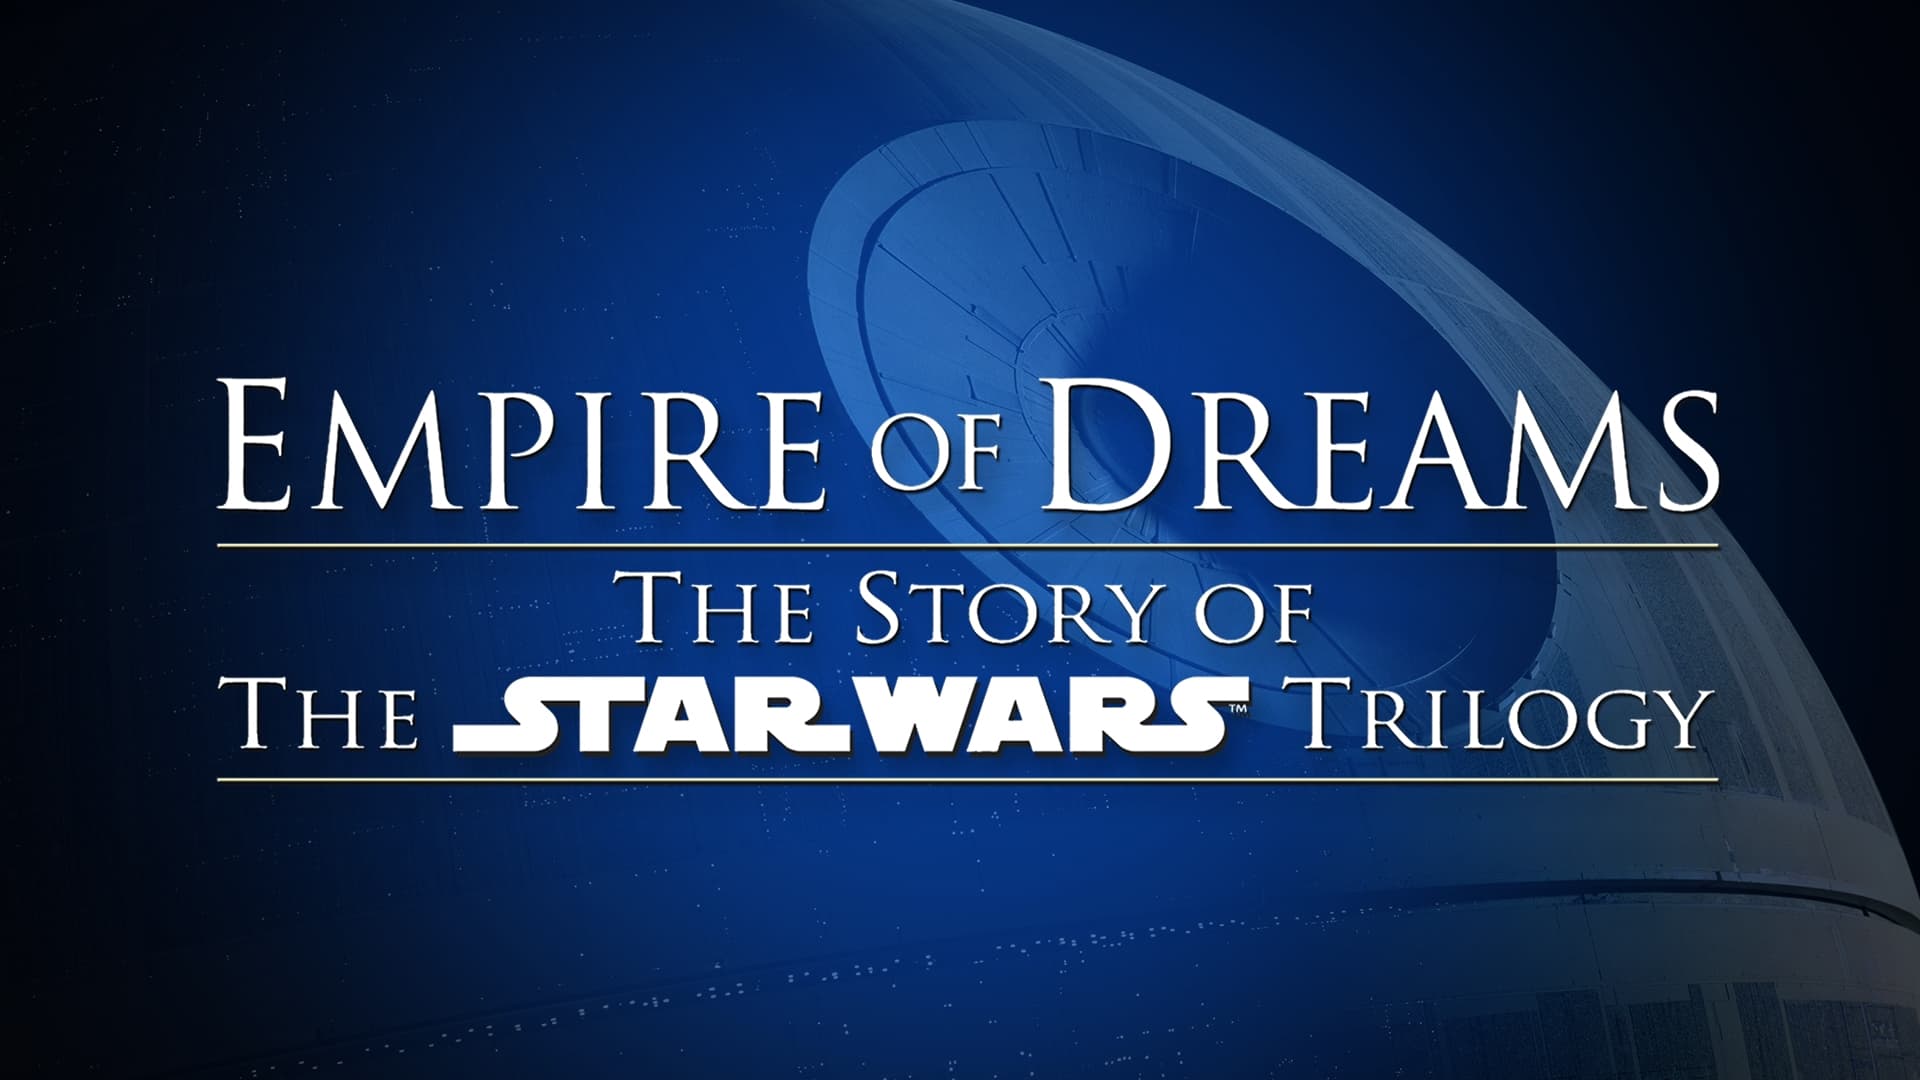 Империя мечты. История трилогии Звёздные войны